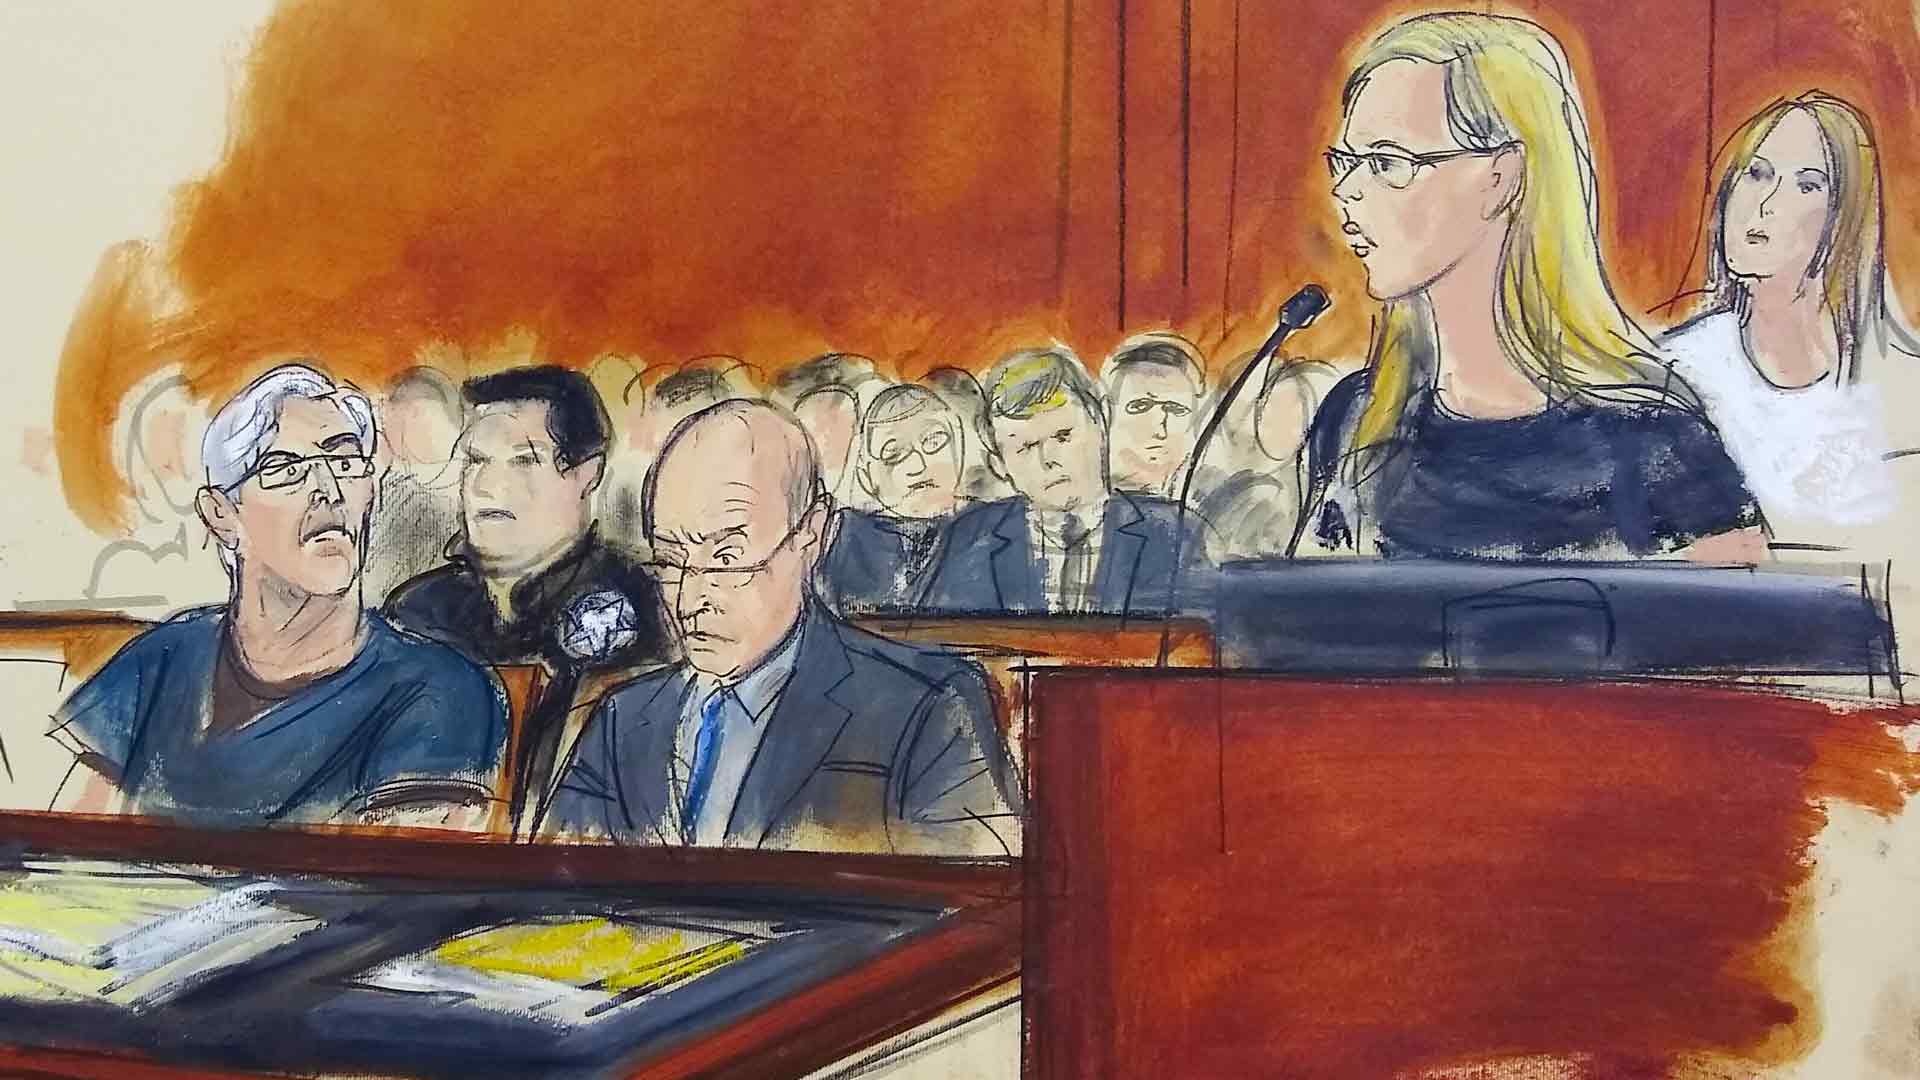 Un juez federal cierra el caso penal por tráfico sexual contra Epstein tras su suicidio